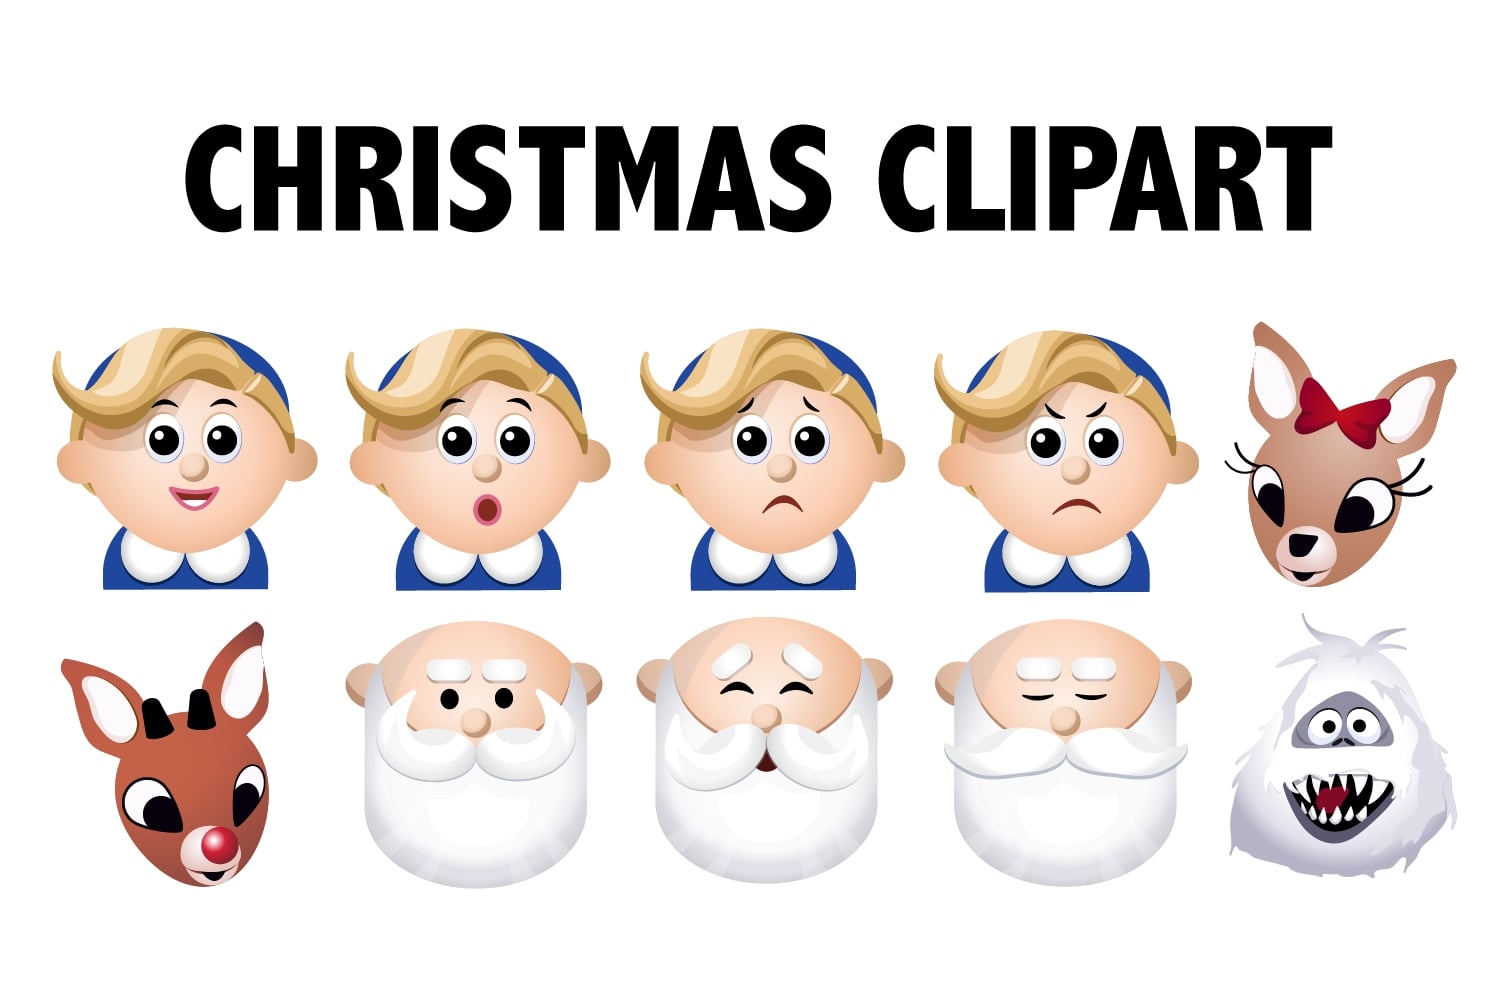 Printable Christmas Character Images_63029